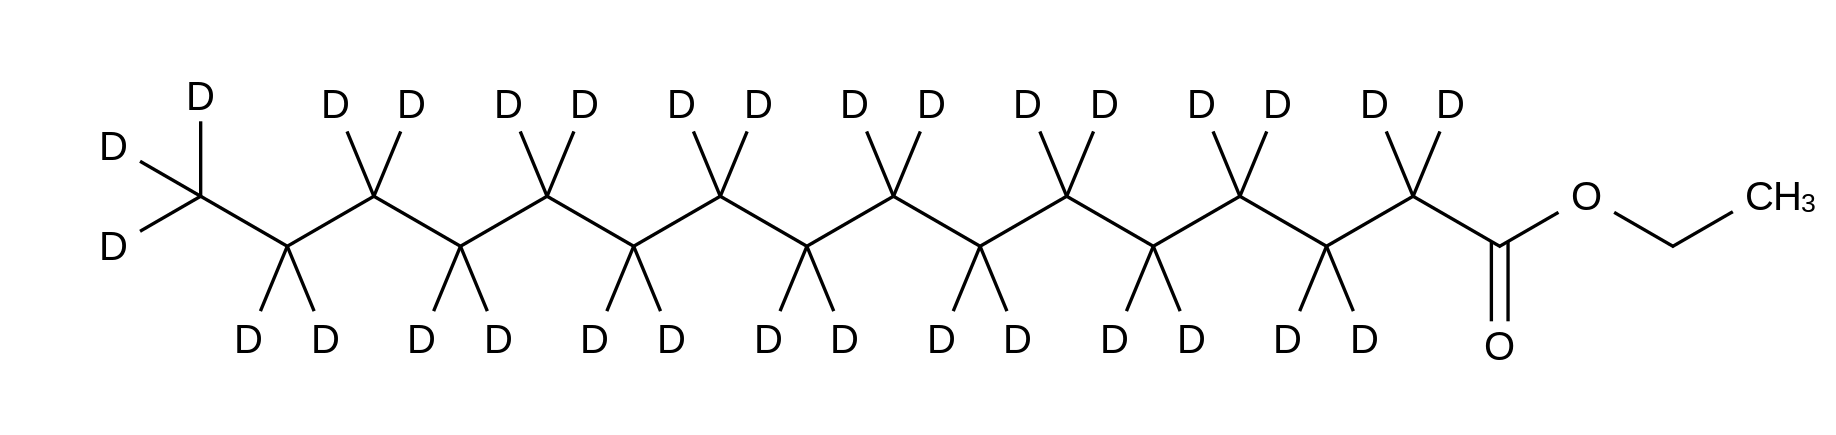 Ethyl Hexadecanoate-d<sub>31</sub>